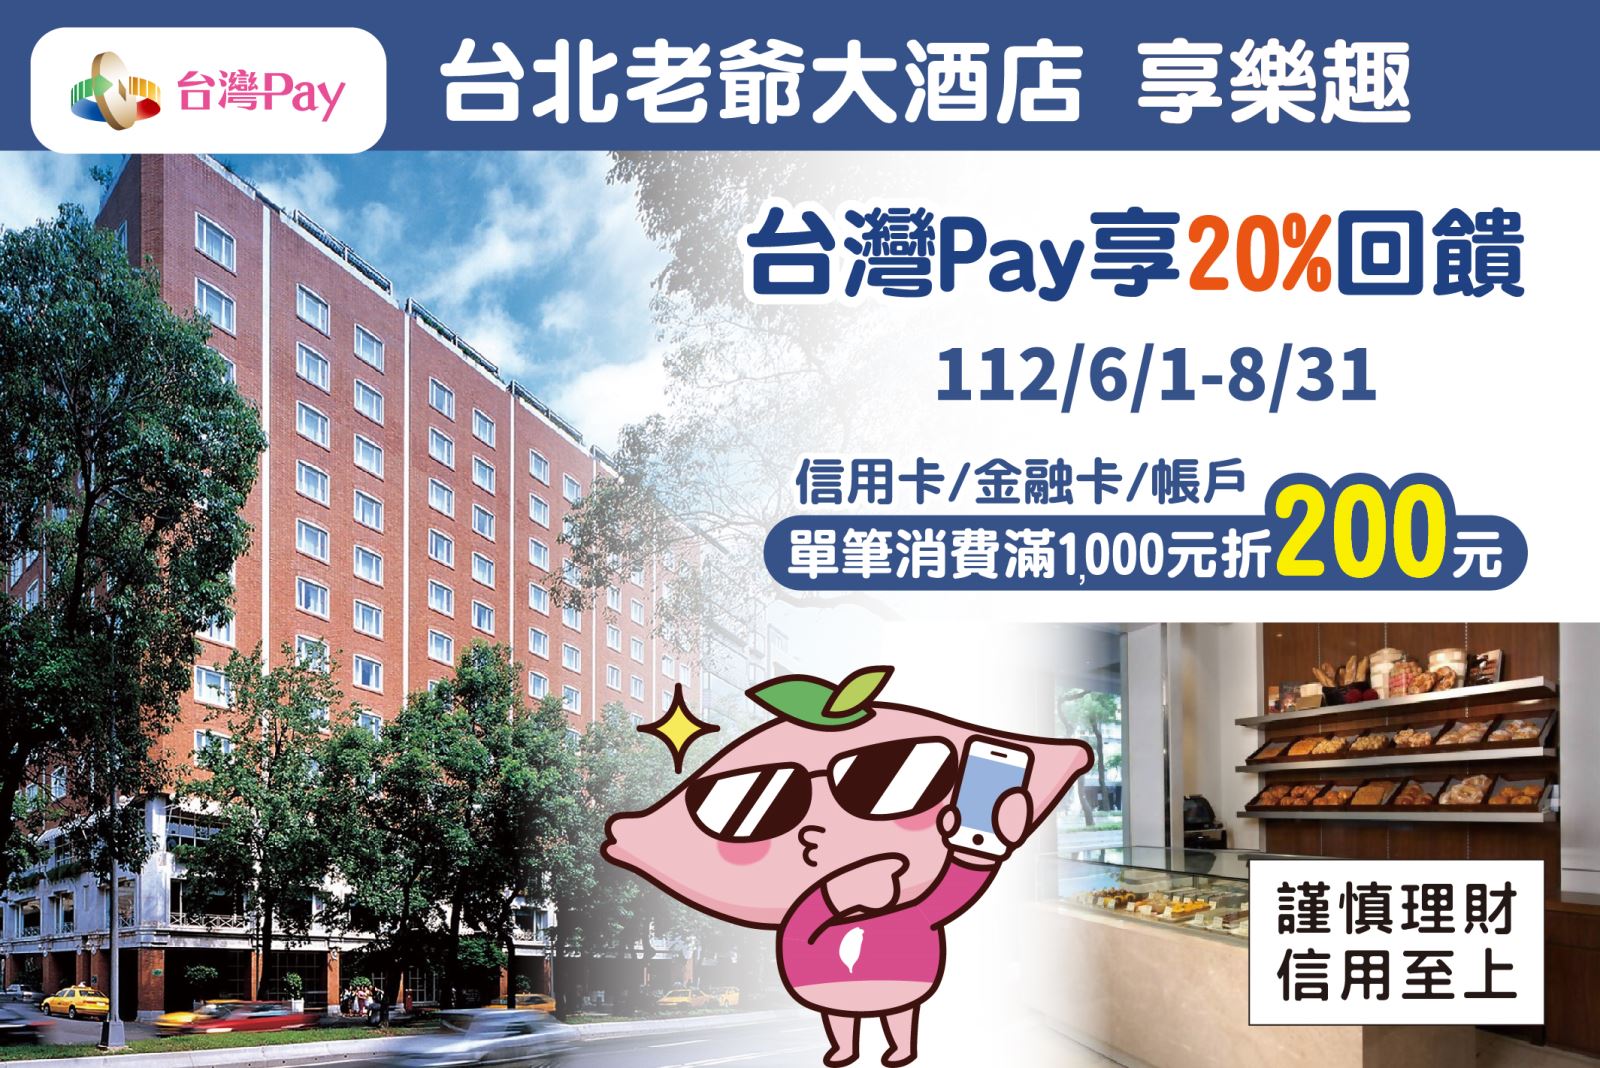 以「台灣 Pay」QR Code 掃碼進行支付，單筆消費金額滿新臺幣1,000   元 (含)以上，可享 200 元回饋。